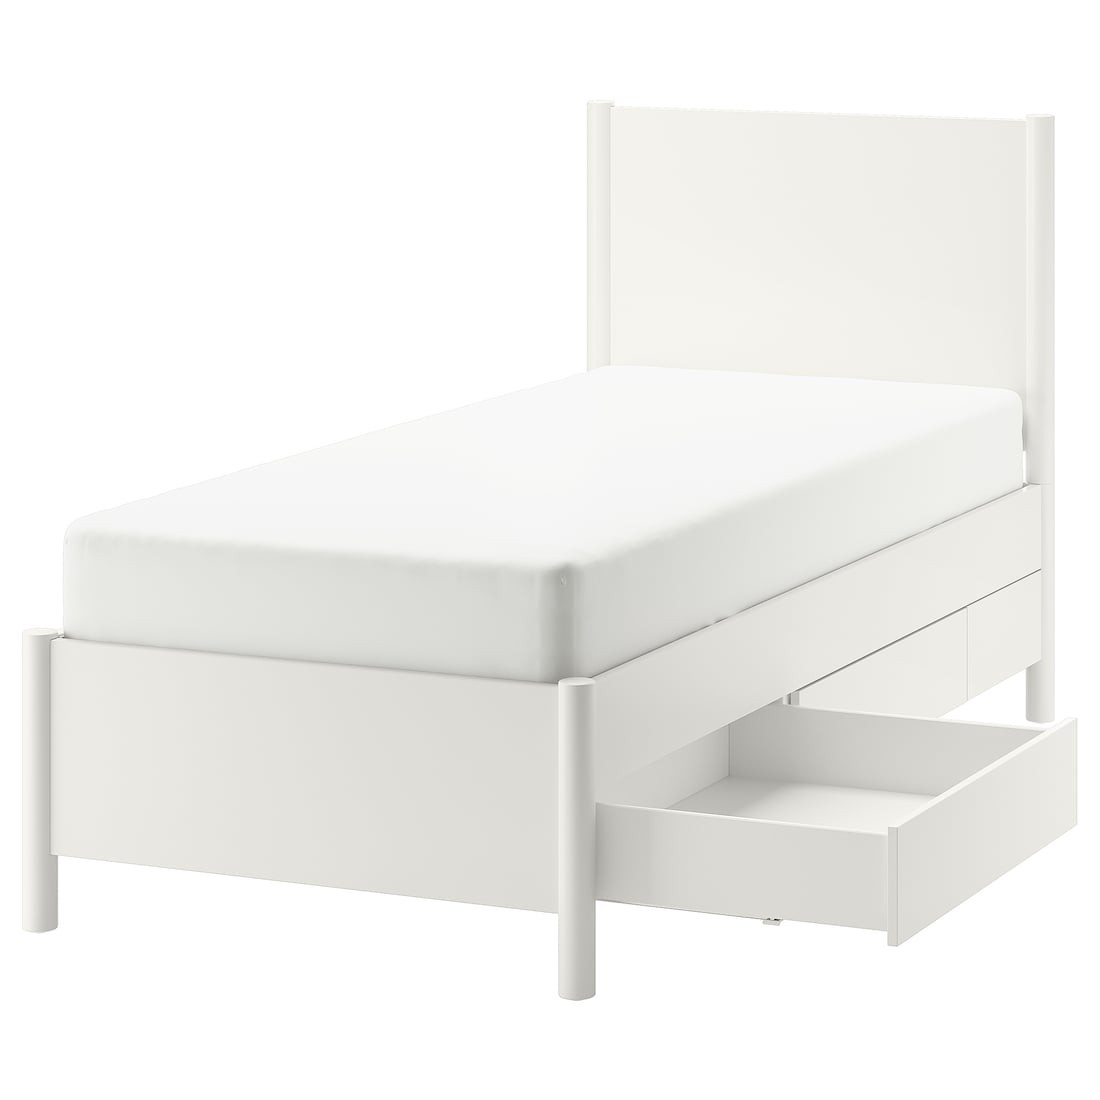 IKEA TONSTAD каркас кровати с ящиками, кремовый / Лейрсунд, 90x200 см 99496624 994.966.24